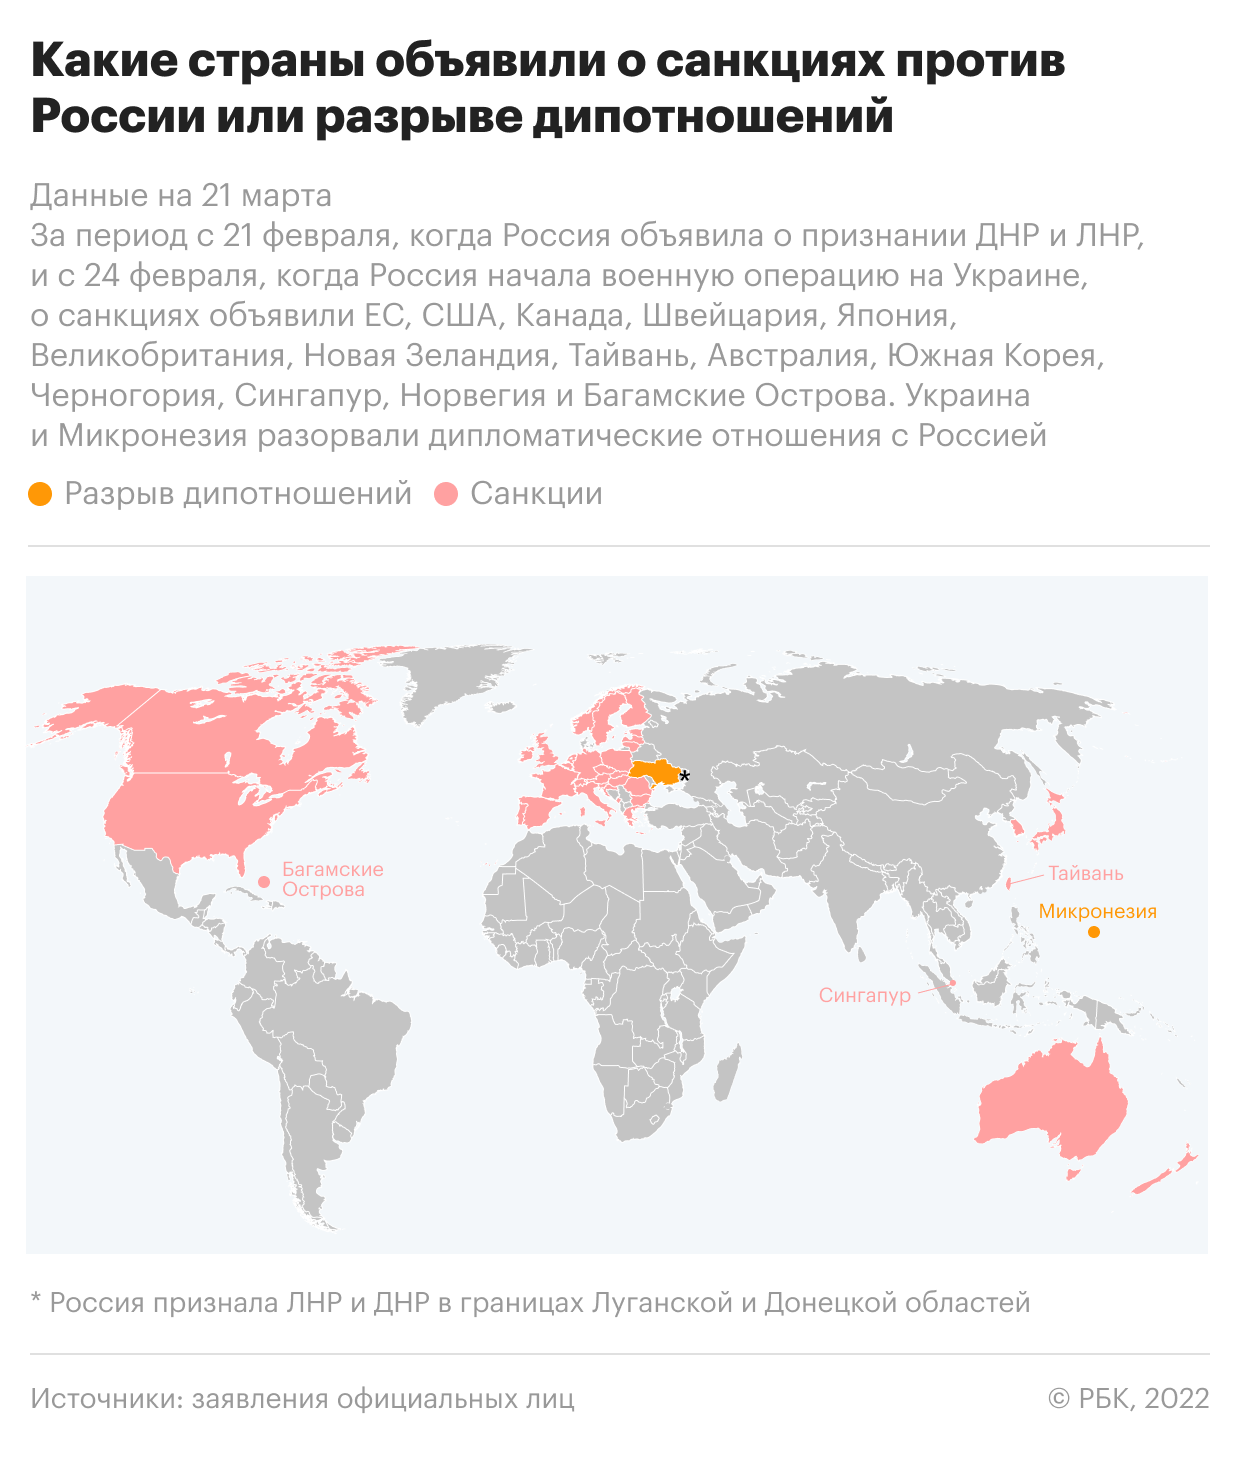 «Газпром нефть» попросила доработать налогообложение сервисных соглашений"/>













